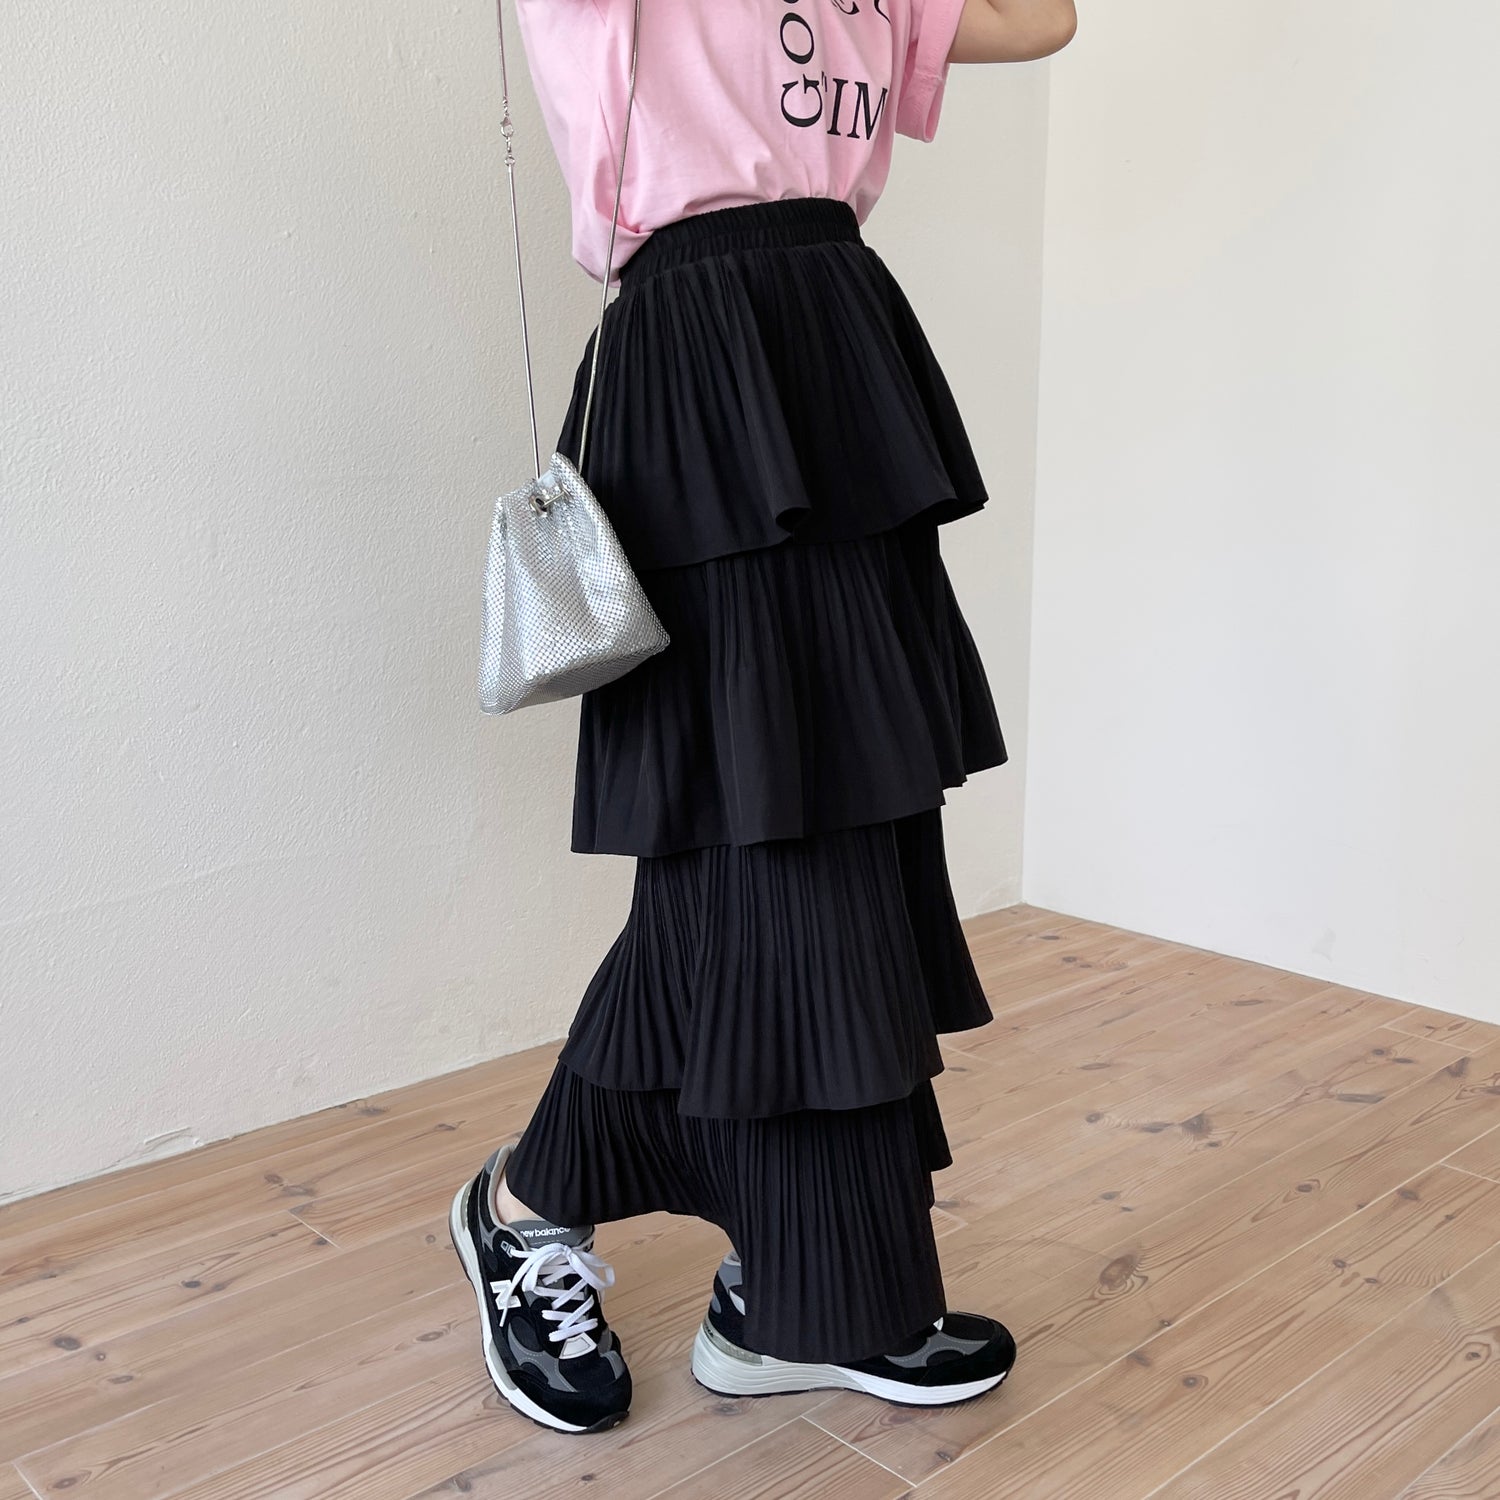 flamenco skirt / black